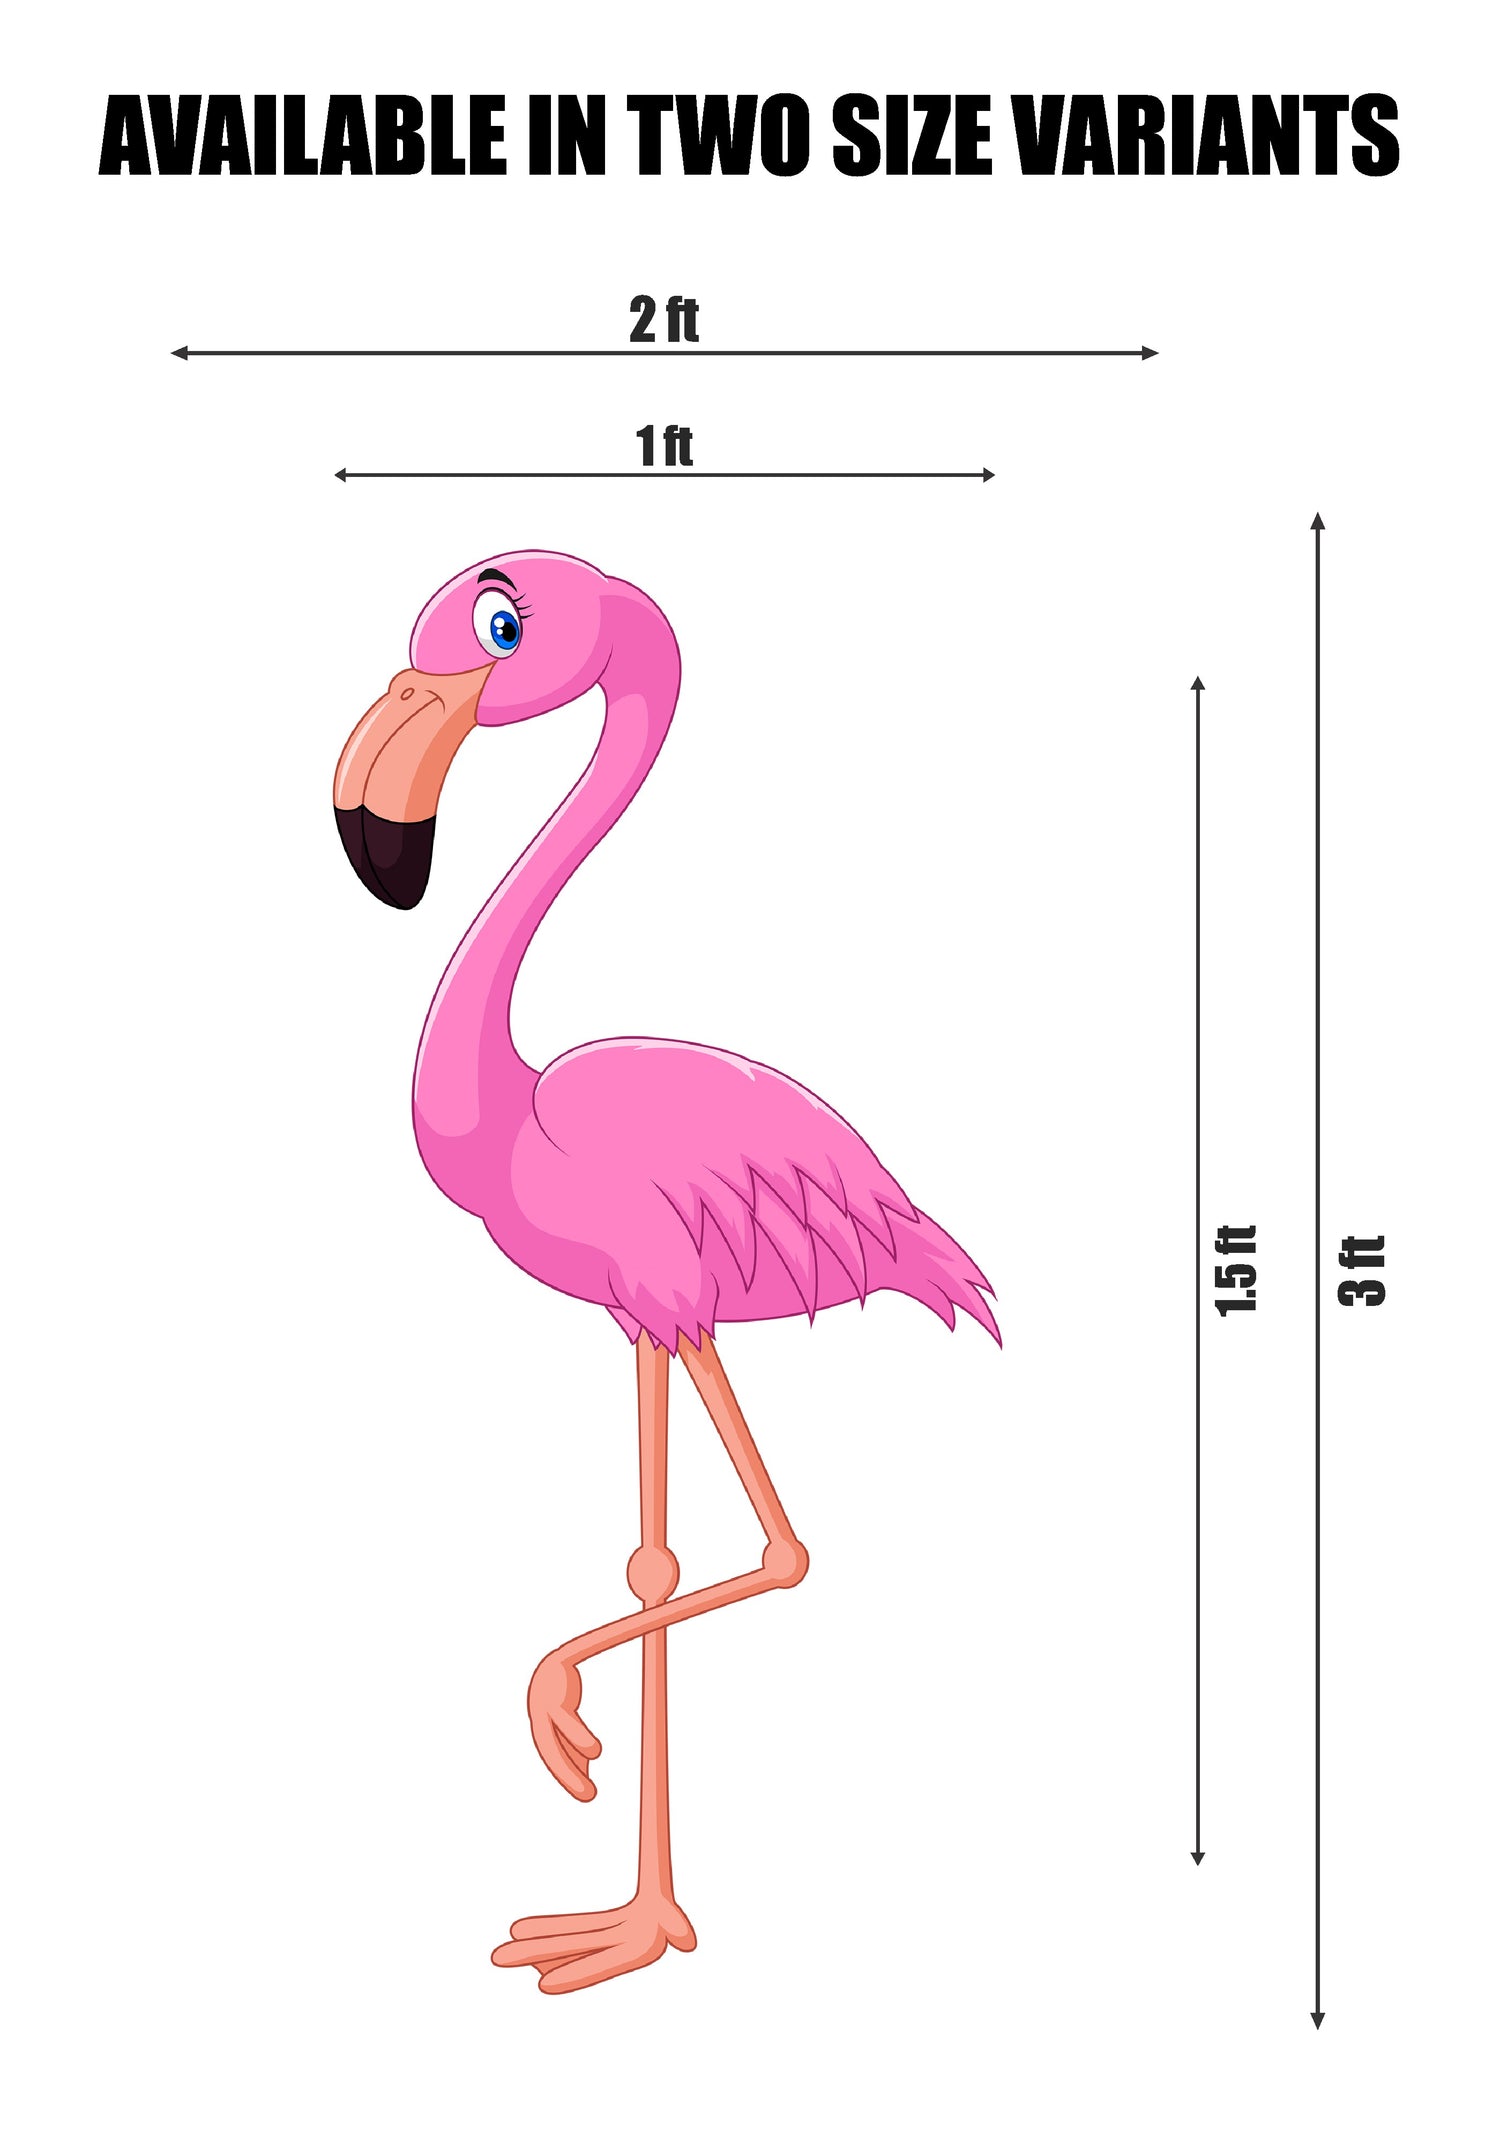 PSI Flamingo Theme Cutout - 01